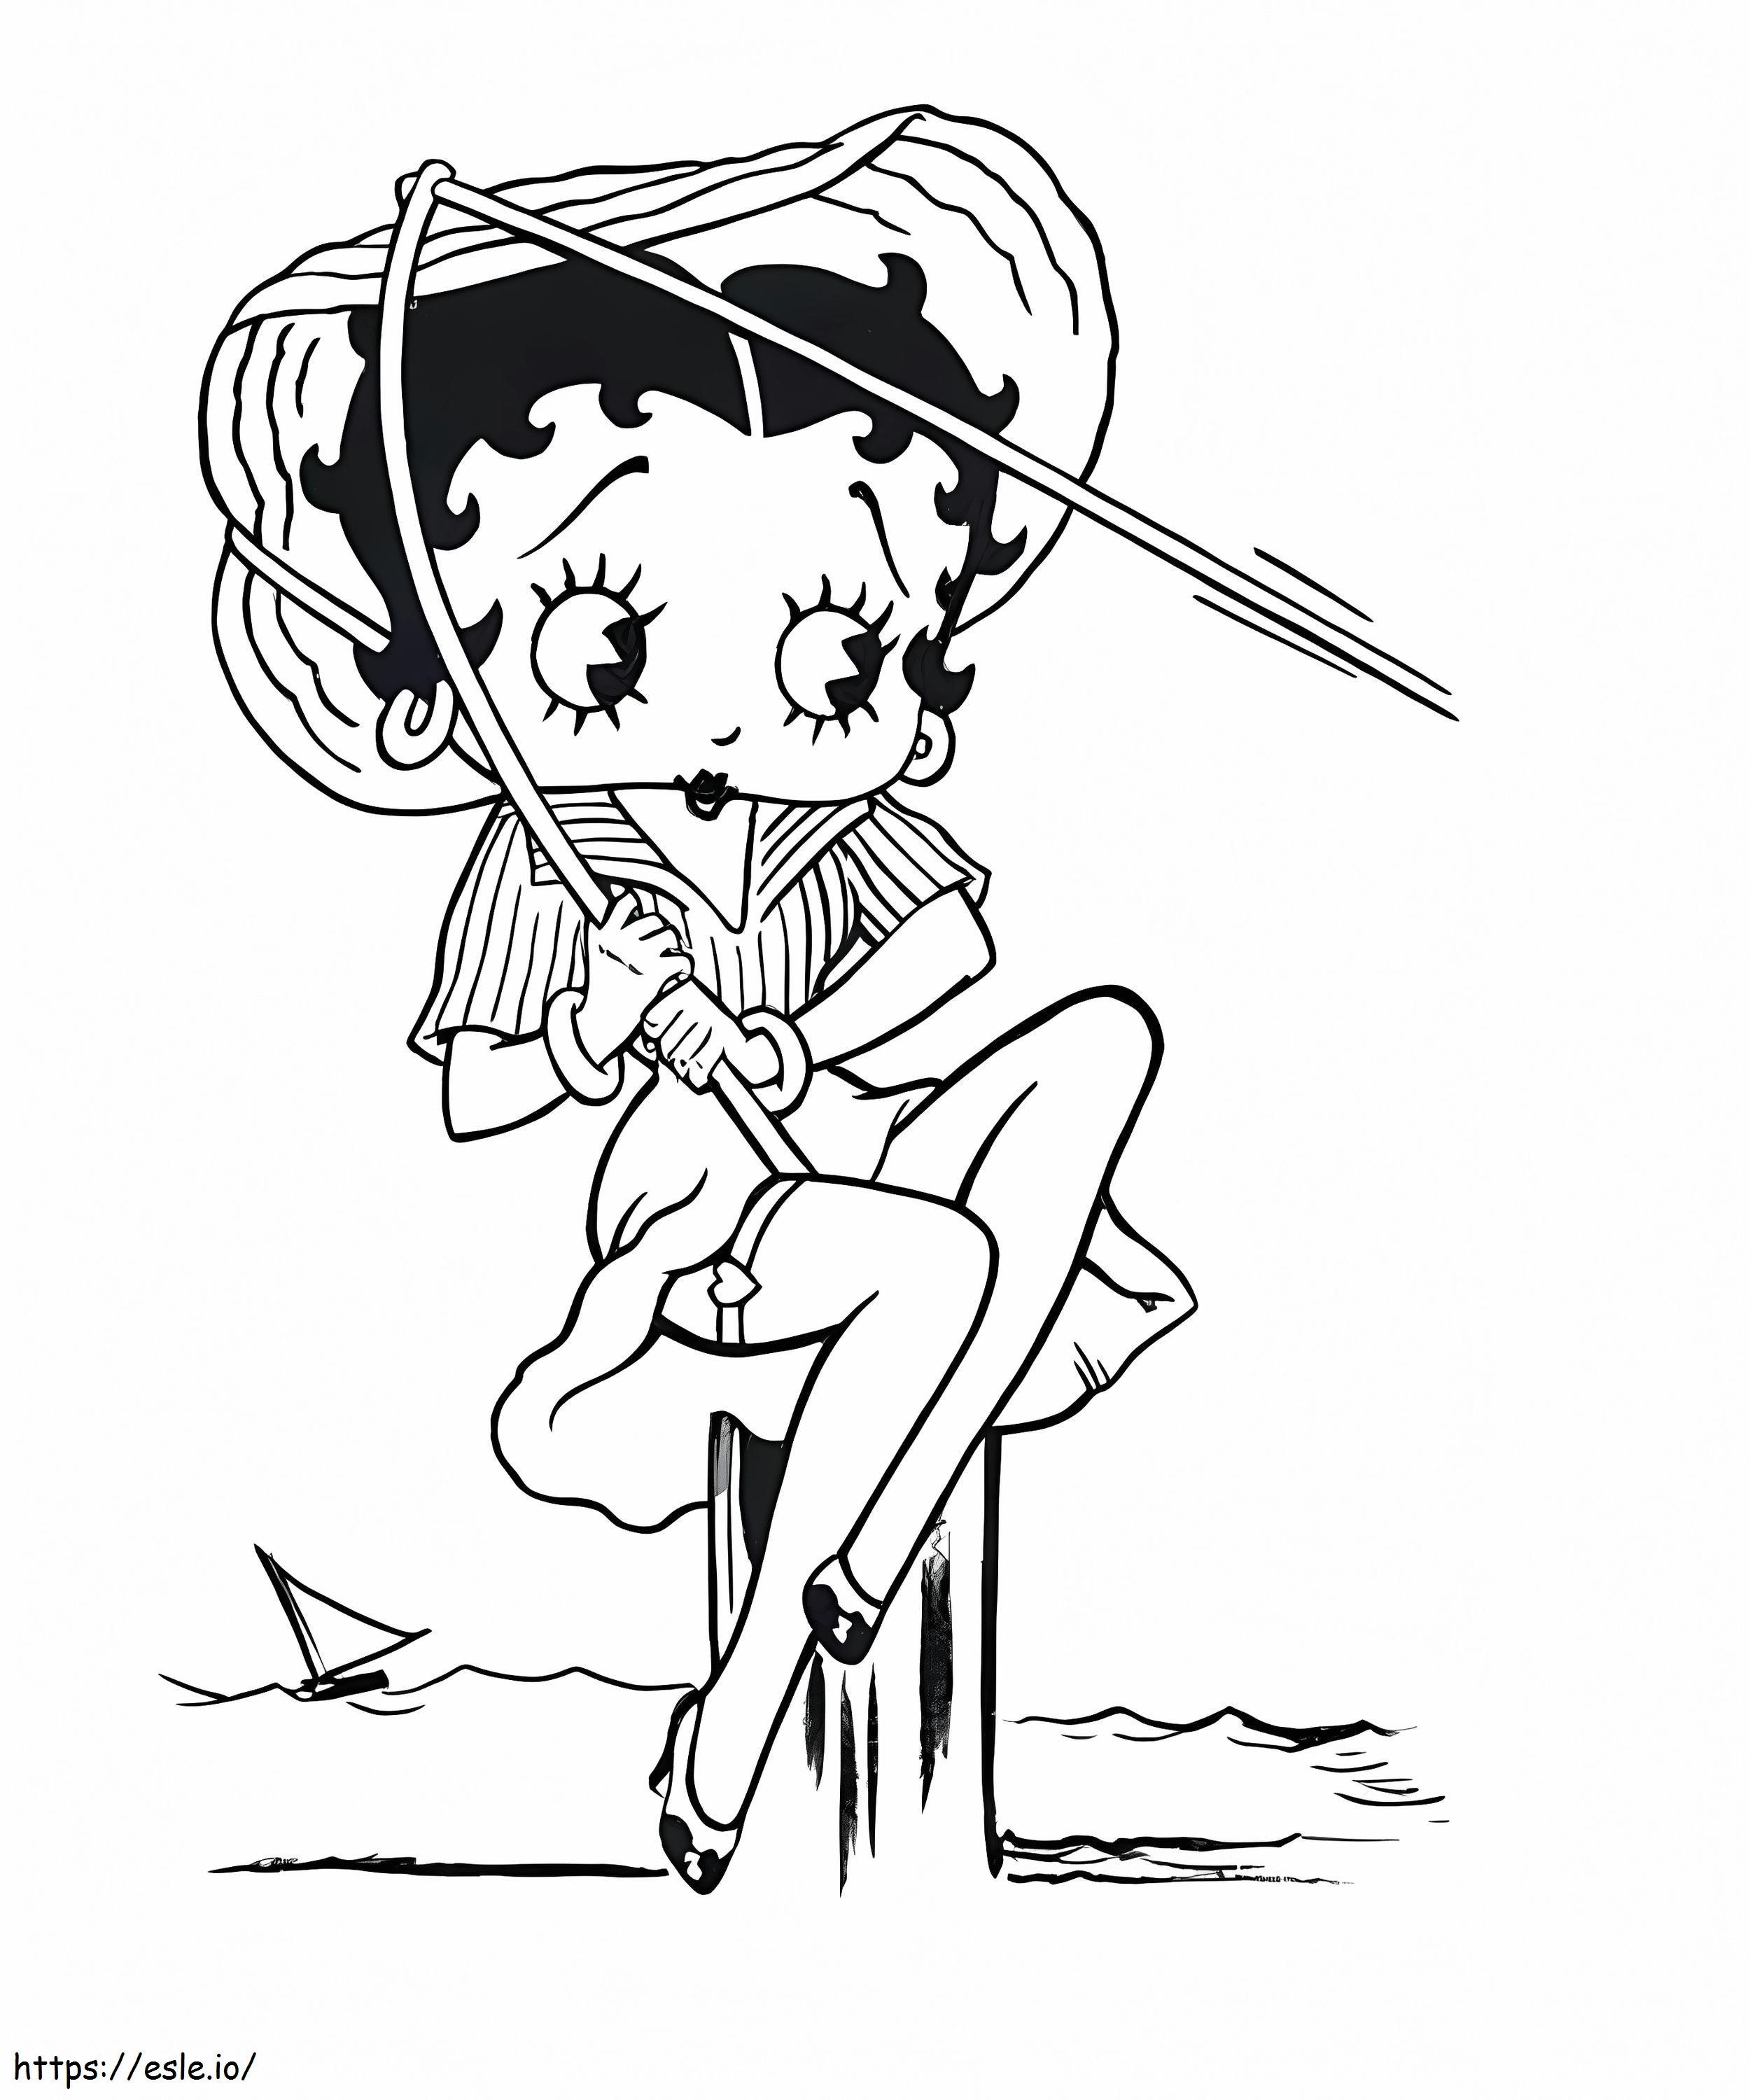 Betty Boop geht angeln ausmalbilder